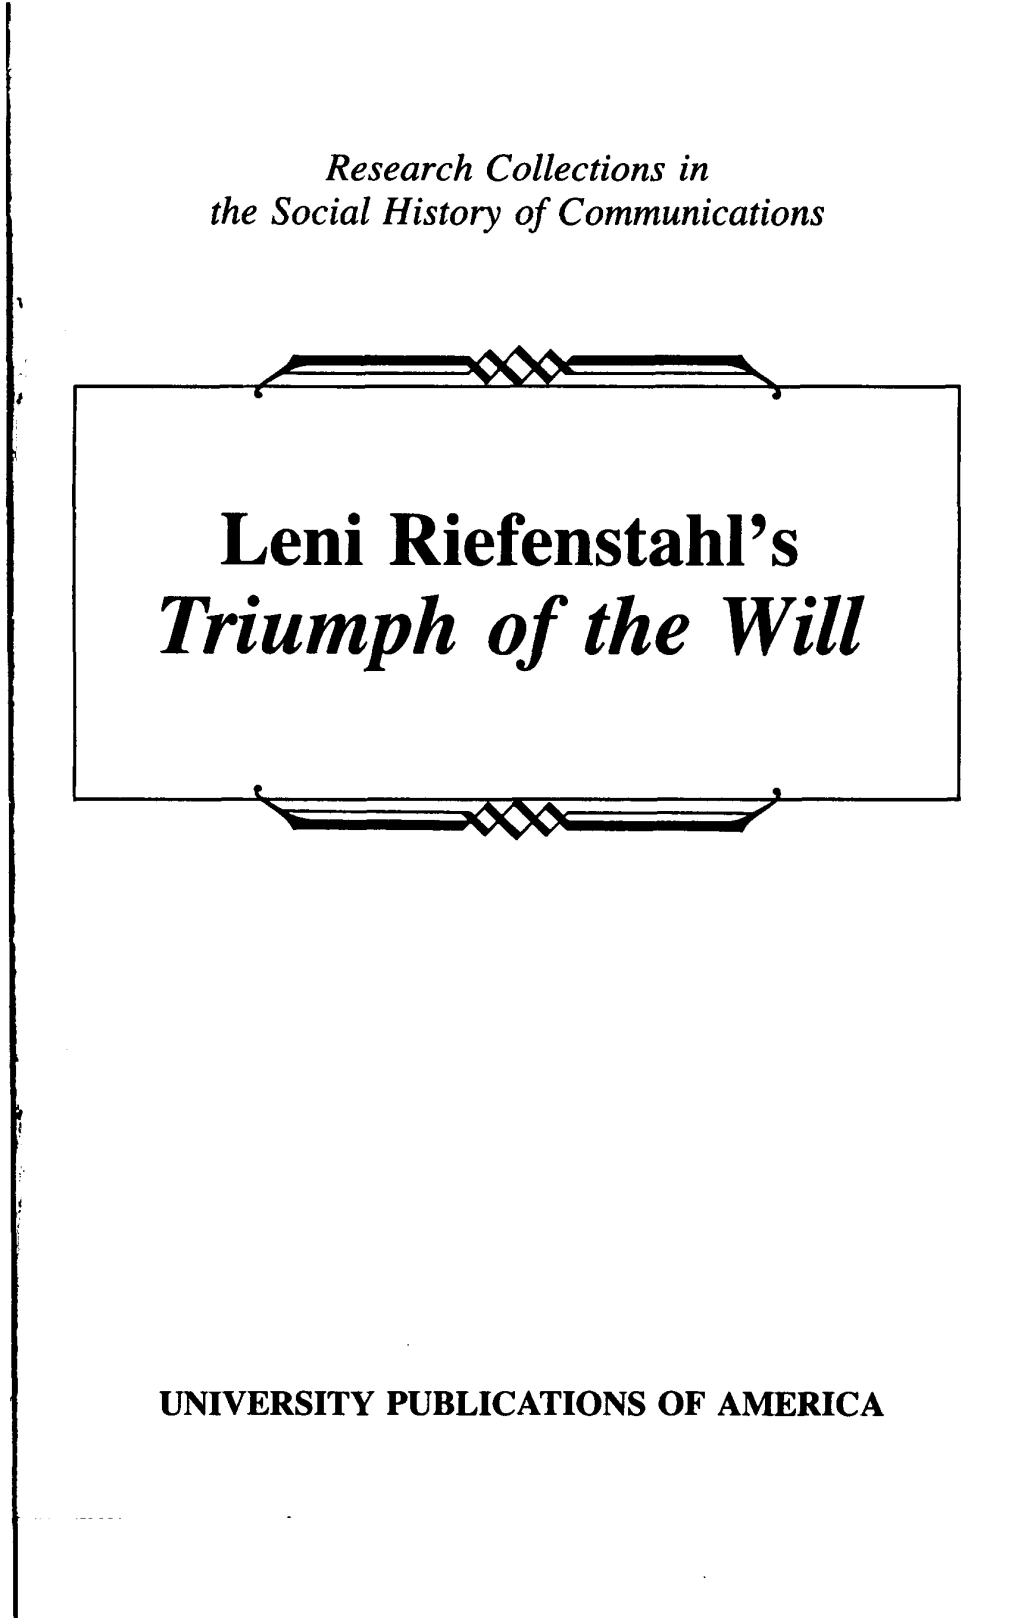 Leni Riefenstahl's Triumph of the Will